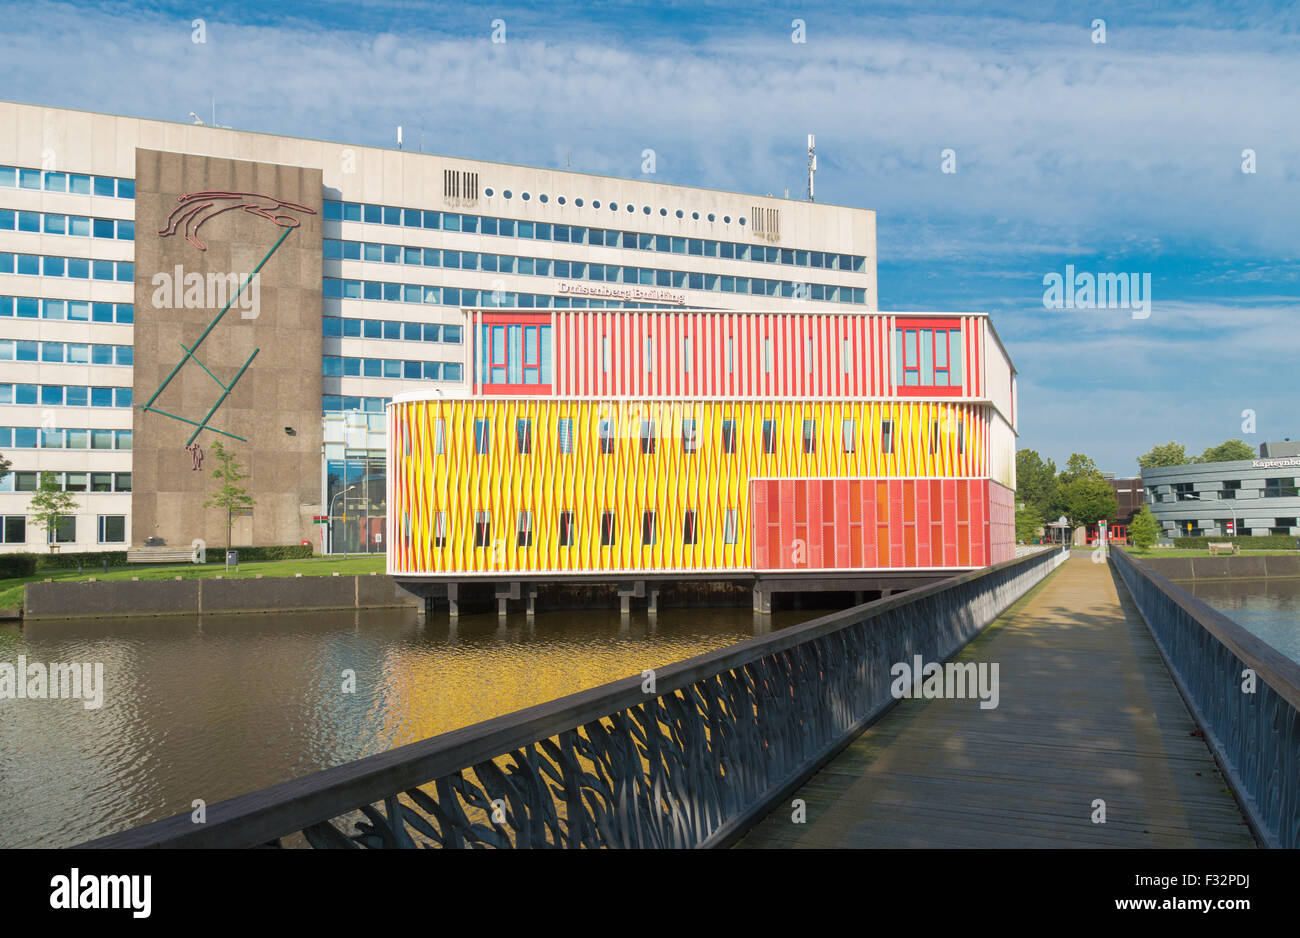 GRONINGEN, Pays-Bas - le 22 août 2015 : orange moderne s'appuyant sur le campus de l'université de Groningue. L'université compte aroun Banque D'Images